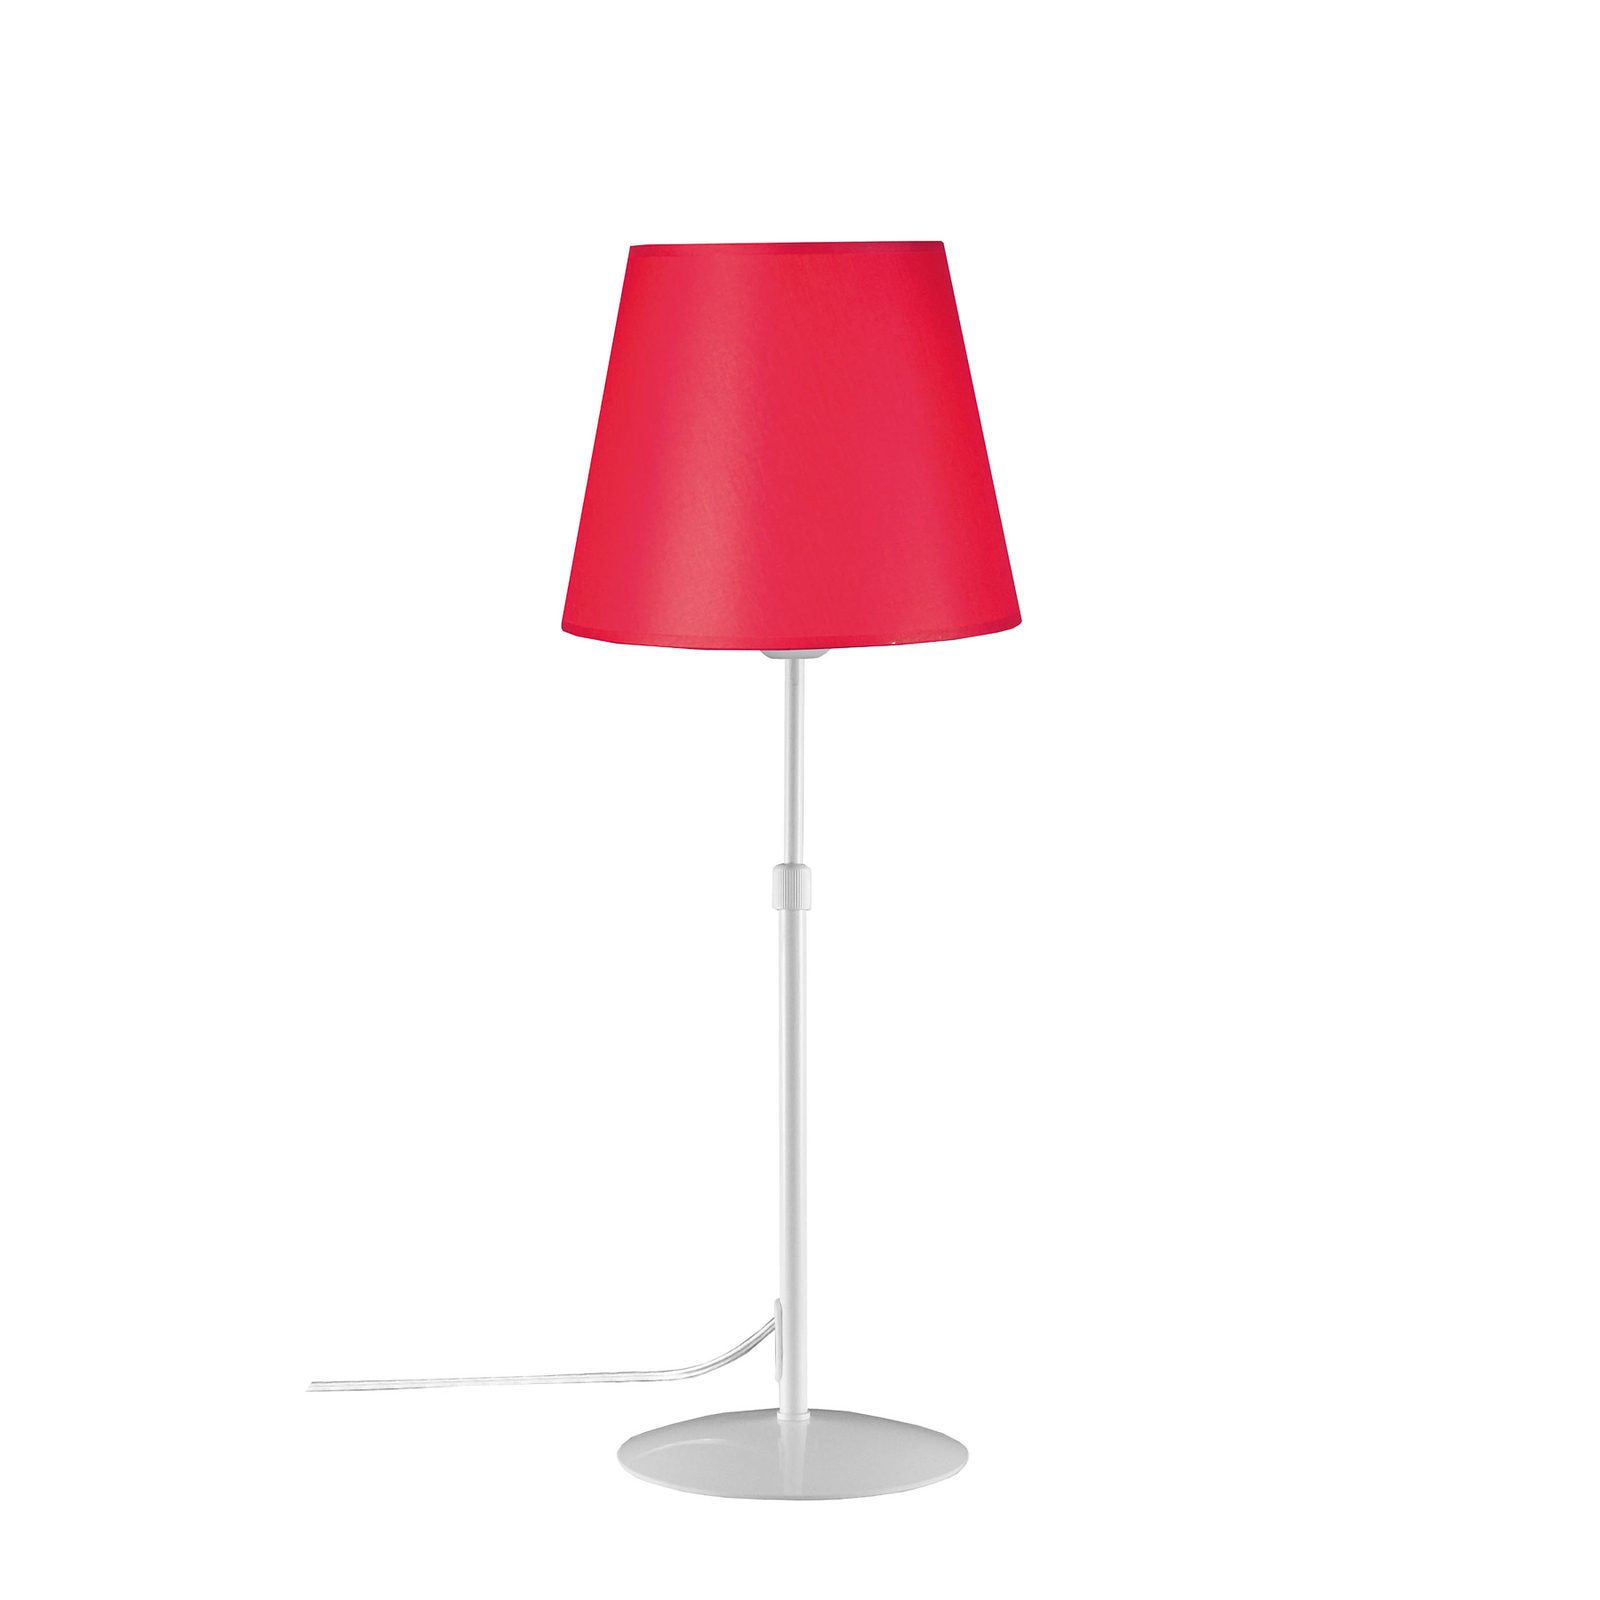 Aluminor Store -pöytälamppu, valkoinen/punainen